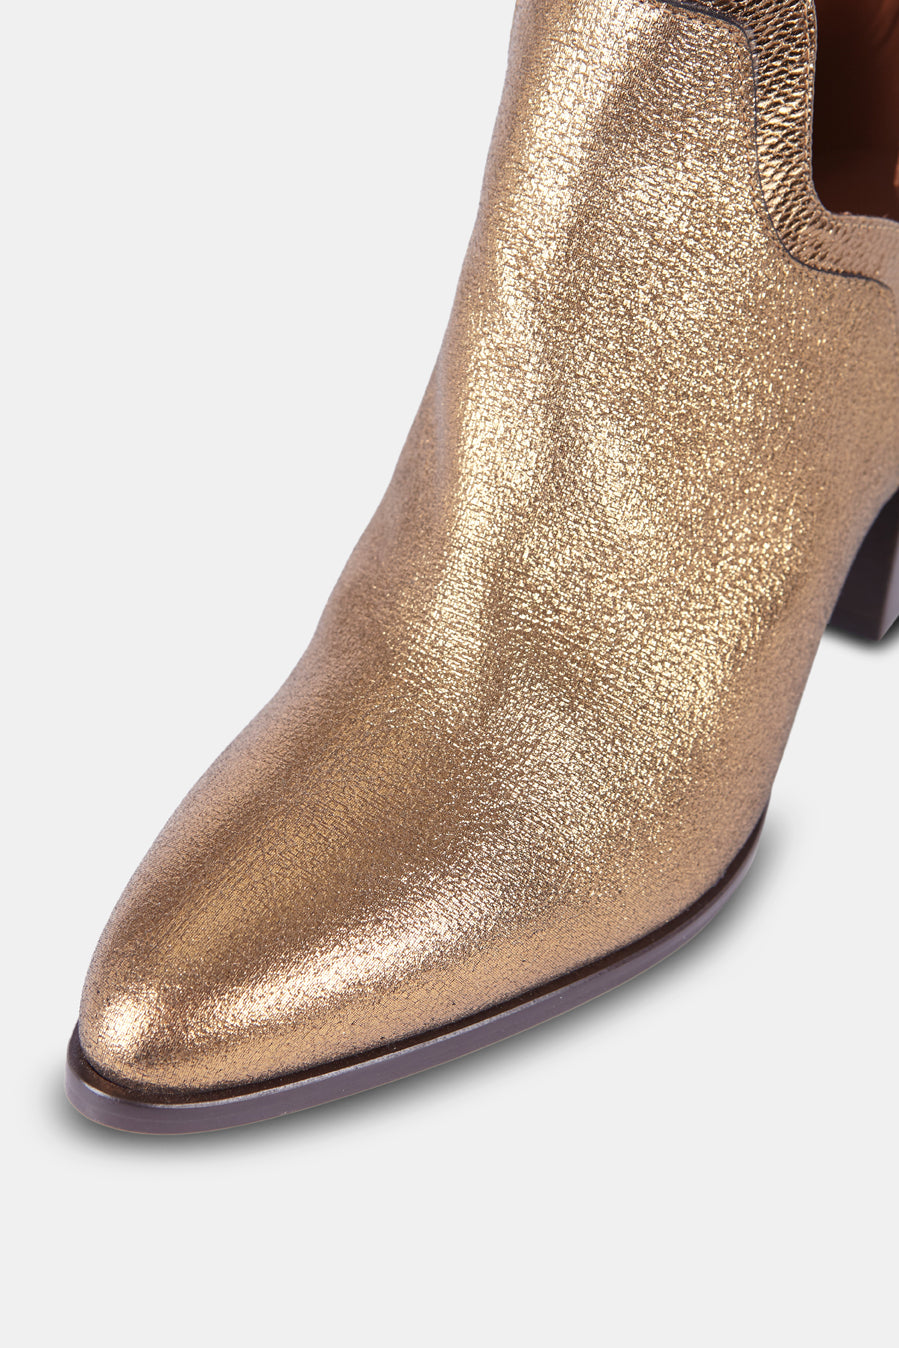 Botines Frida Boots Special Edition color oro viejo tacón 7 centímetros 4 - Micuir